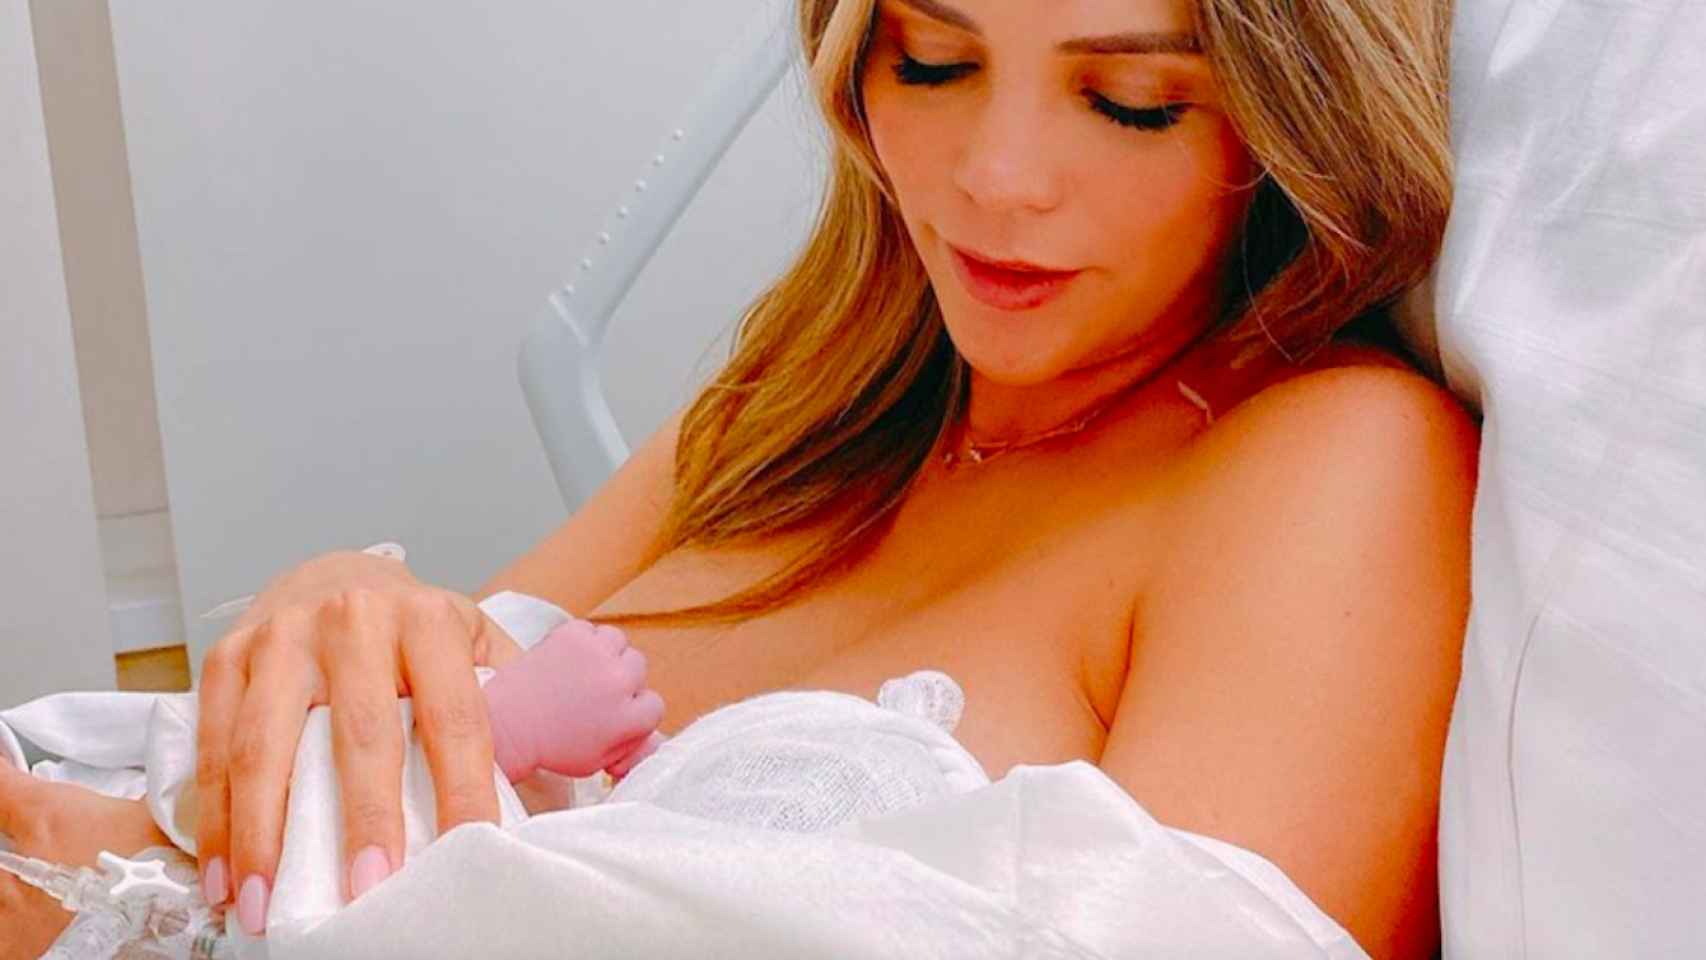 Rosanna Zanetti en el hospital con su hija recién nacida, Bianca, en brazos / INSTAGRAM